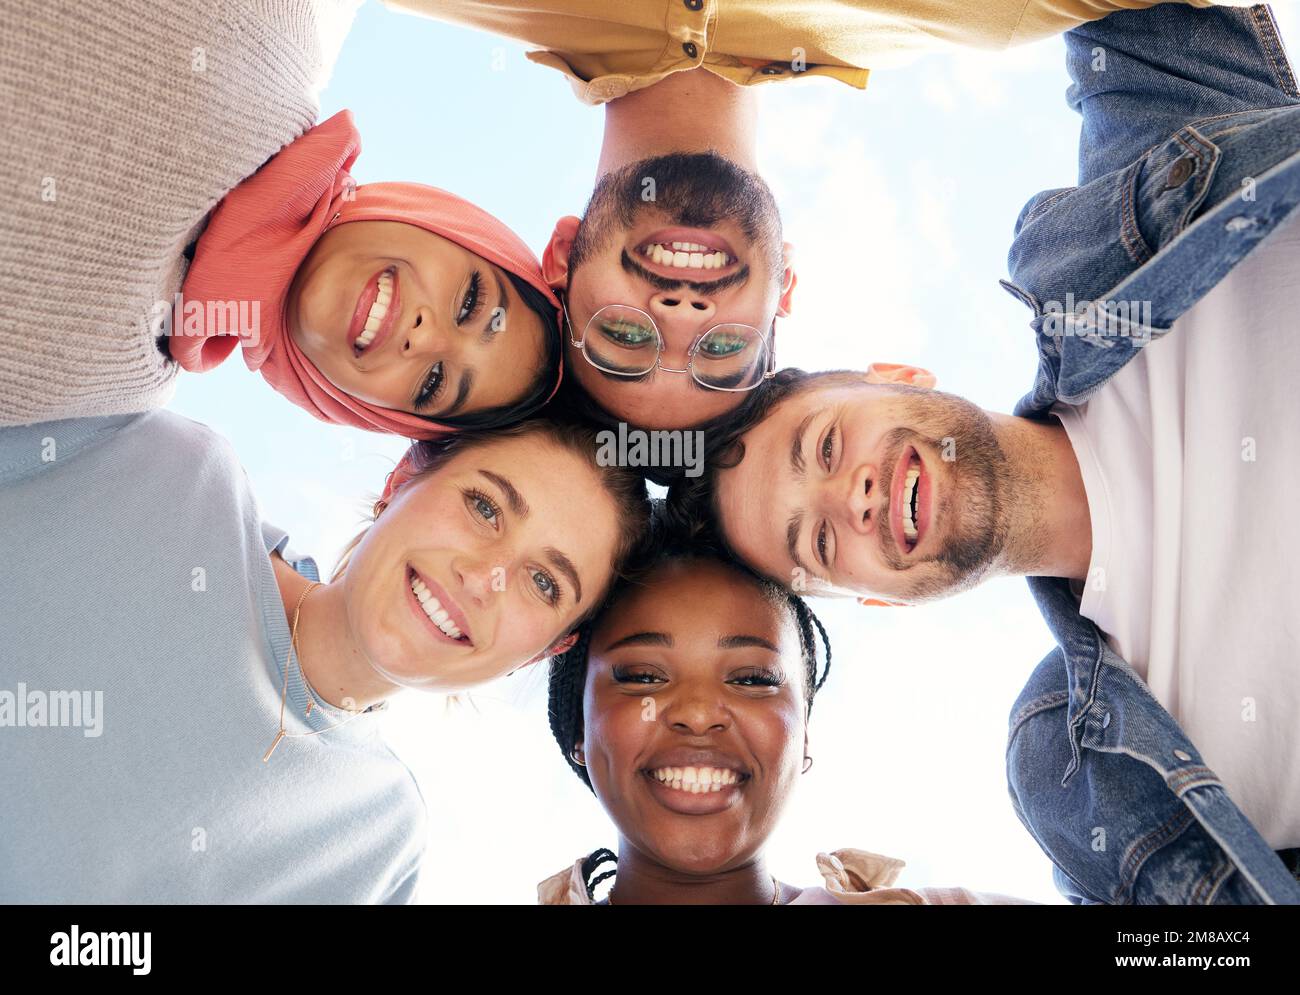 Diversität, Porträt oder glückliche Schüler in Zusammenkünften oder Bildungsgemeinschaften, um gemeinsam Erfolg zu haben. Leiter, Teamarbeit oder Schulfreunde an der Universität Stockfoto